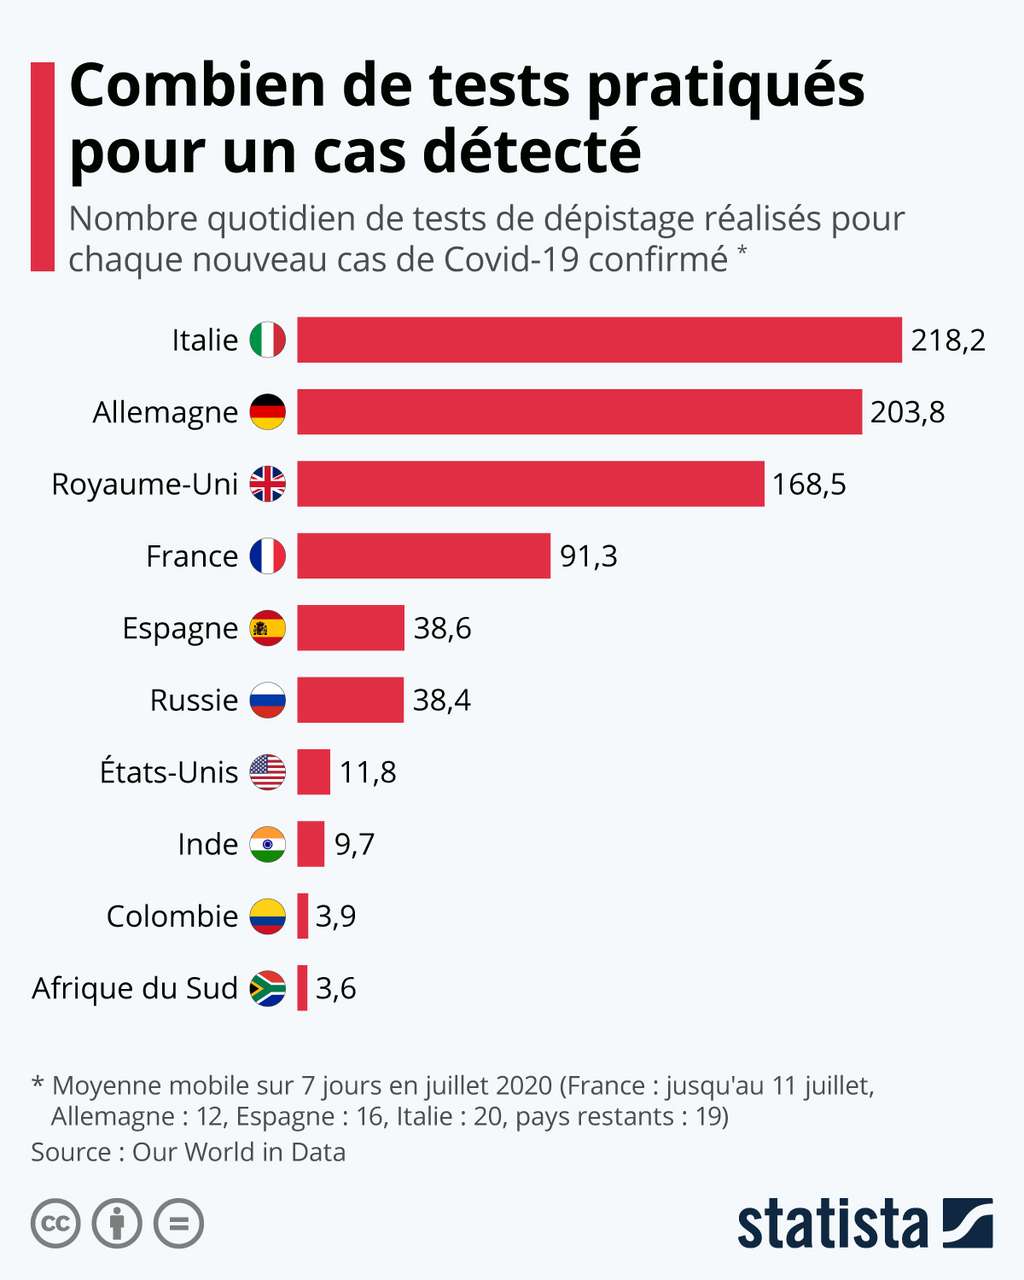 La France pratique 91 tests pour un cas de Covid-19 confirmé. © Statista